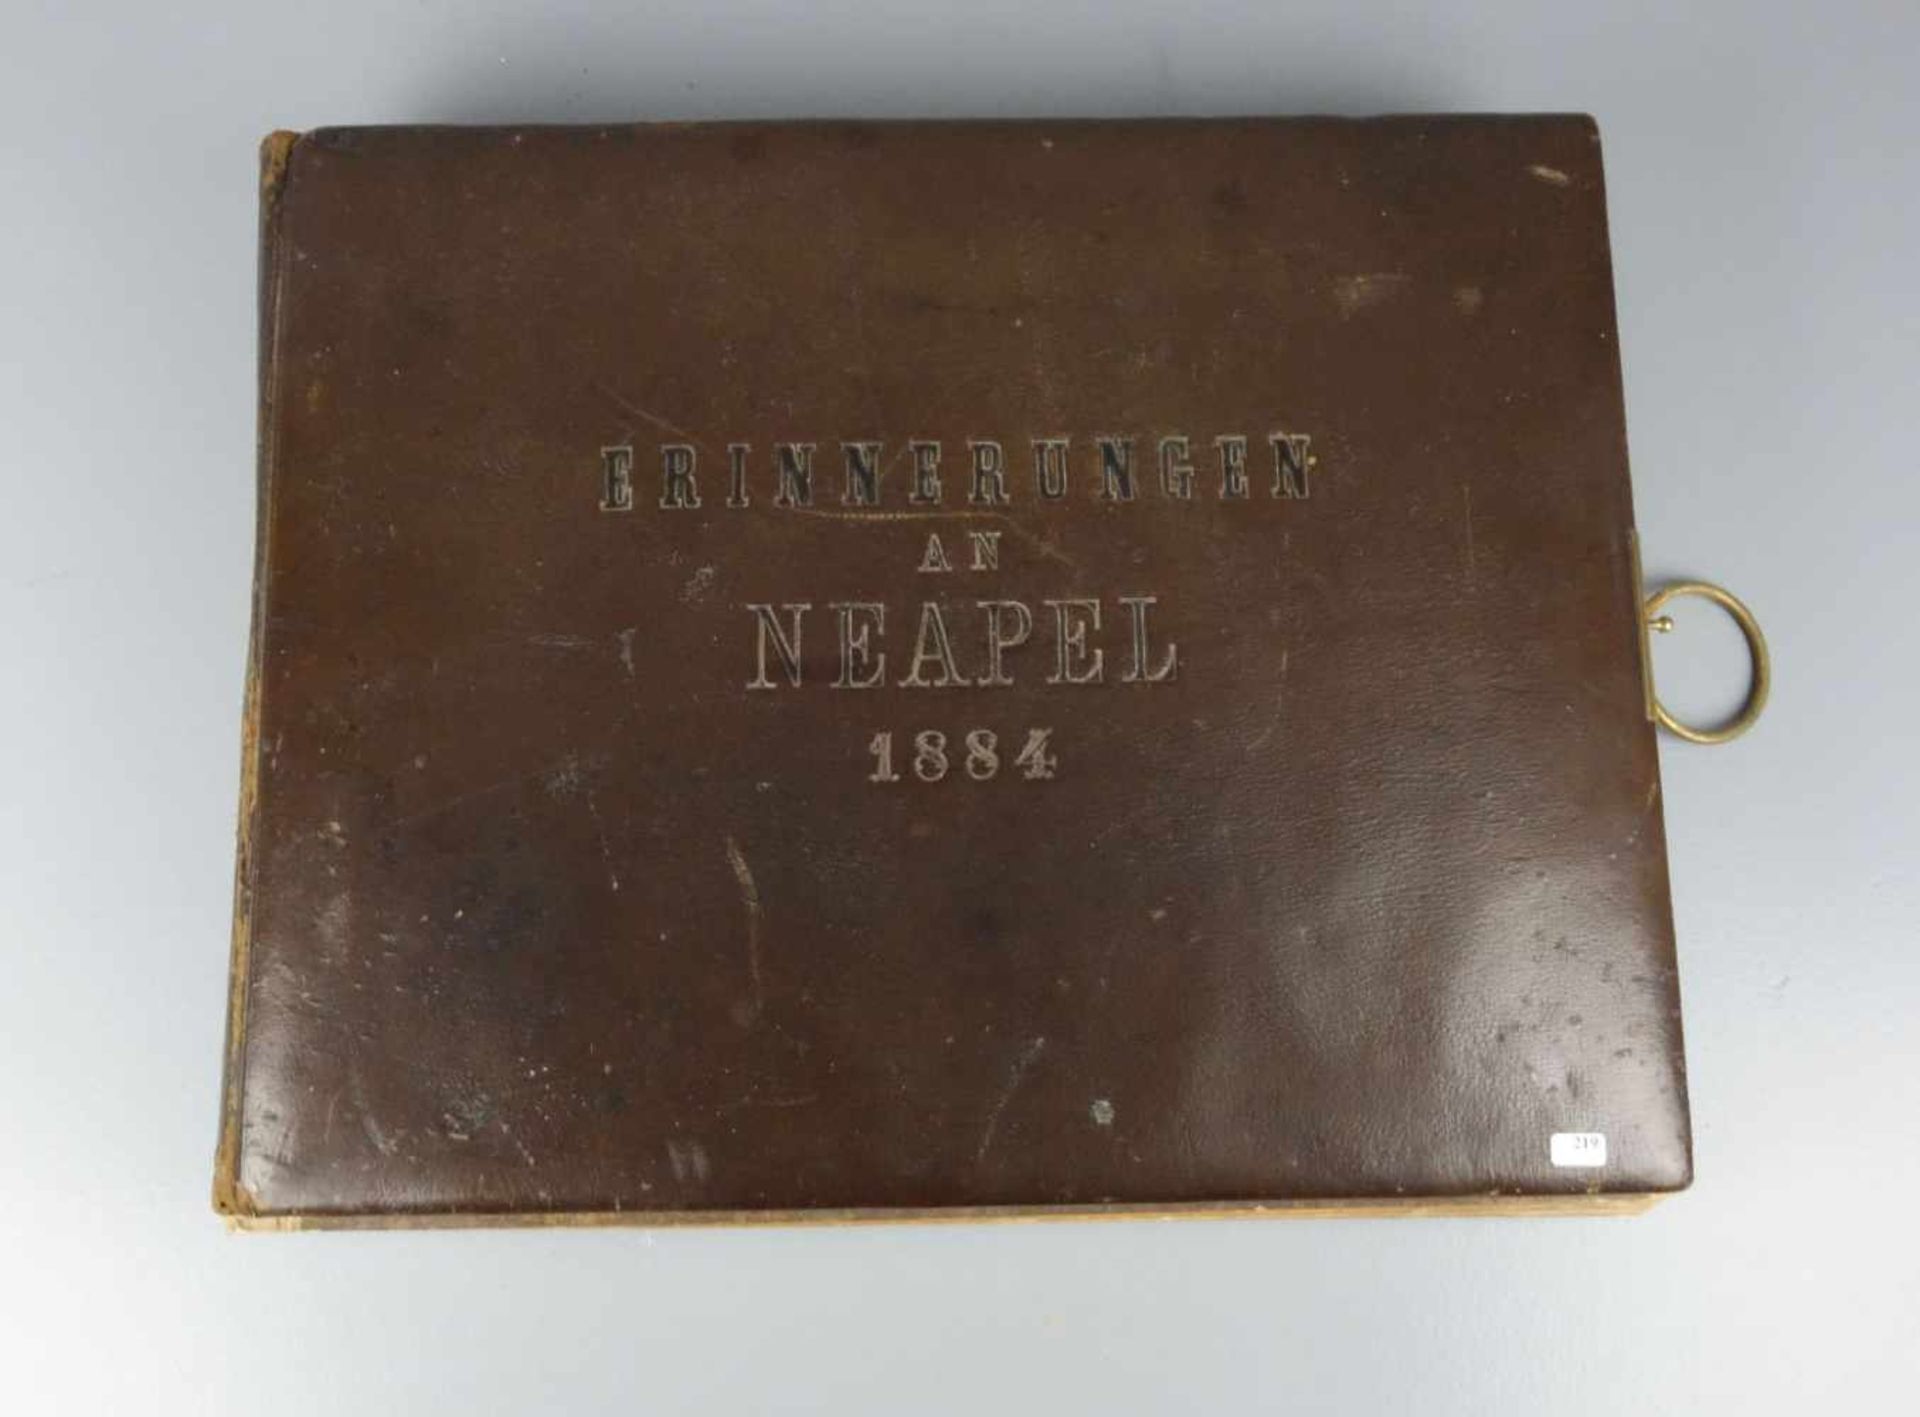 FOTOALBUM "ERINNERUNGEN AN NEAPEL1884", in Leder gebunden. Über 65 Fotografische und